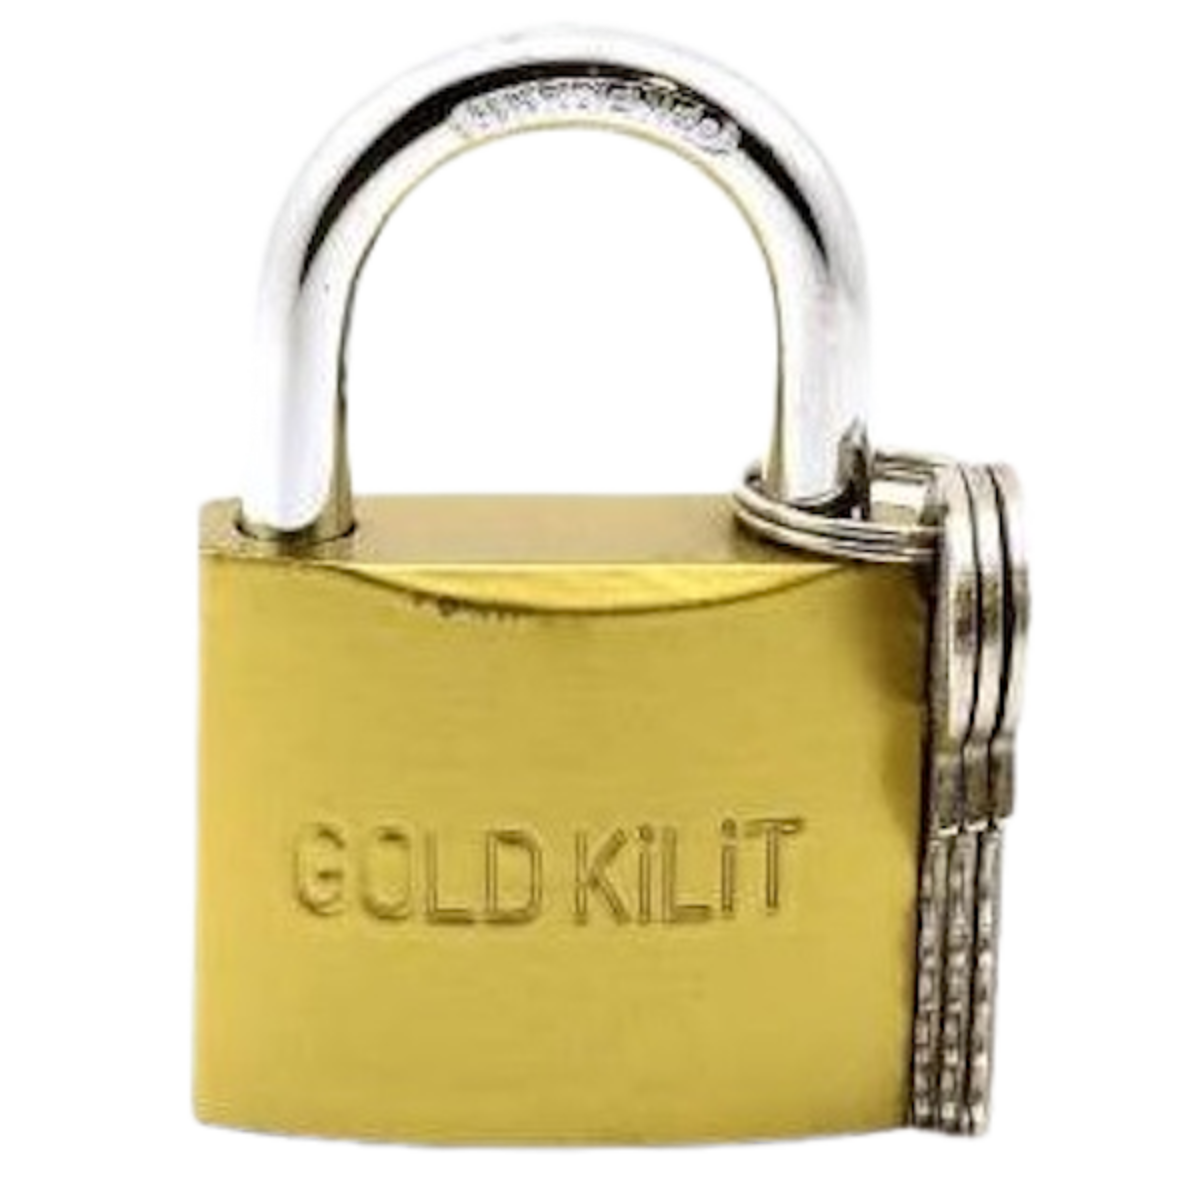 https://dubaibm.com/wp-content/uploads/2022/07/Gold-kilit-2-1-removebg-preview-1200x1200.png